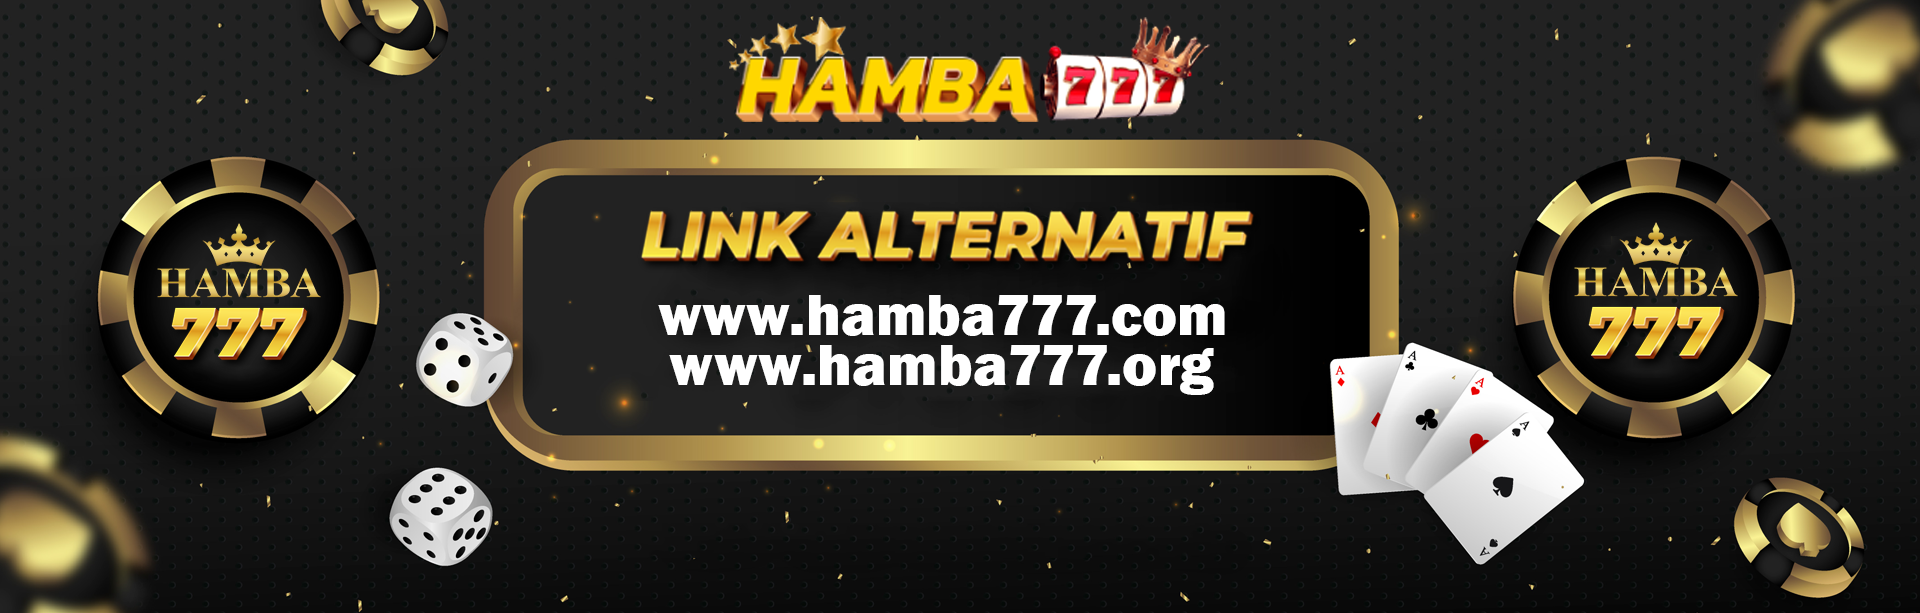 HAMBA777